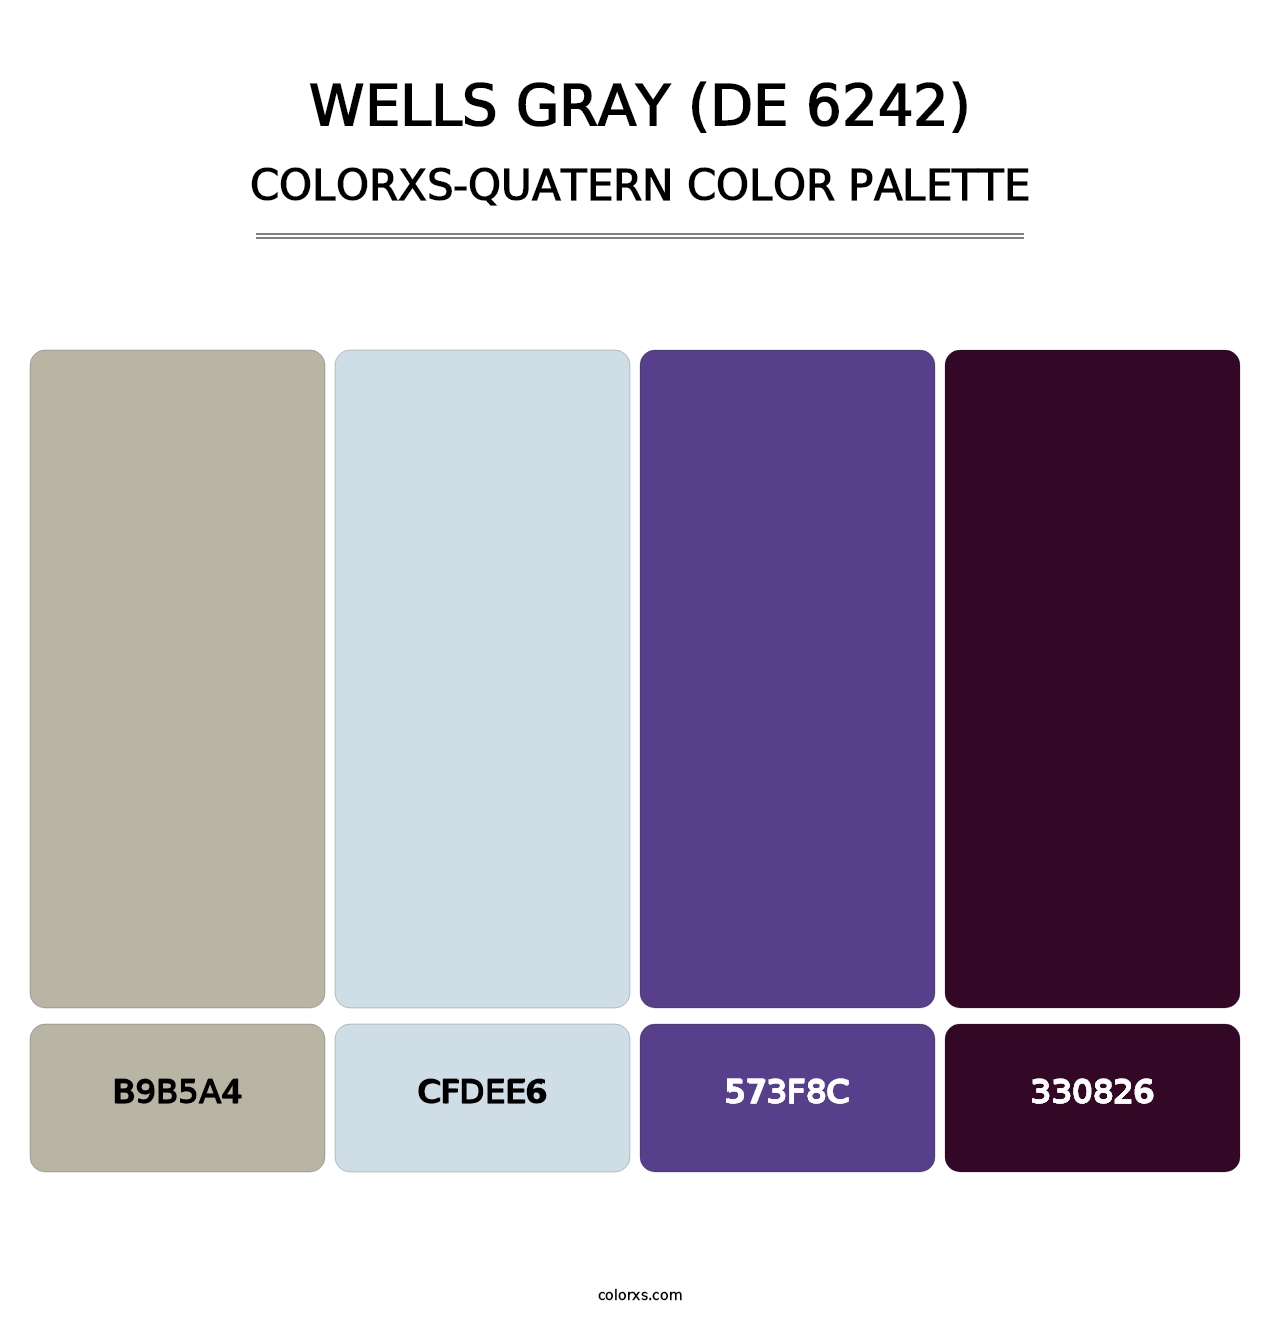 Wells Gray (DE 6242) - Colorxs Quatern Palette